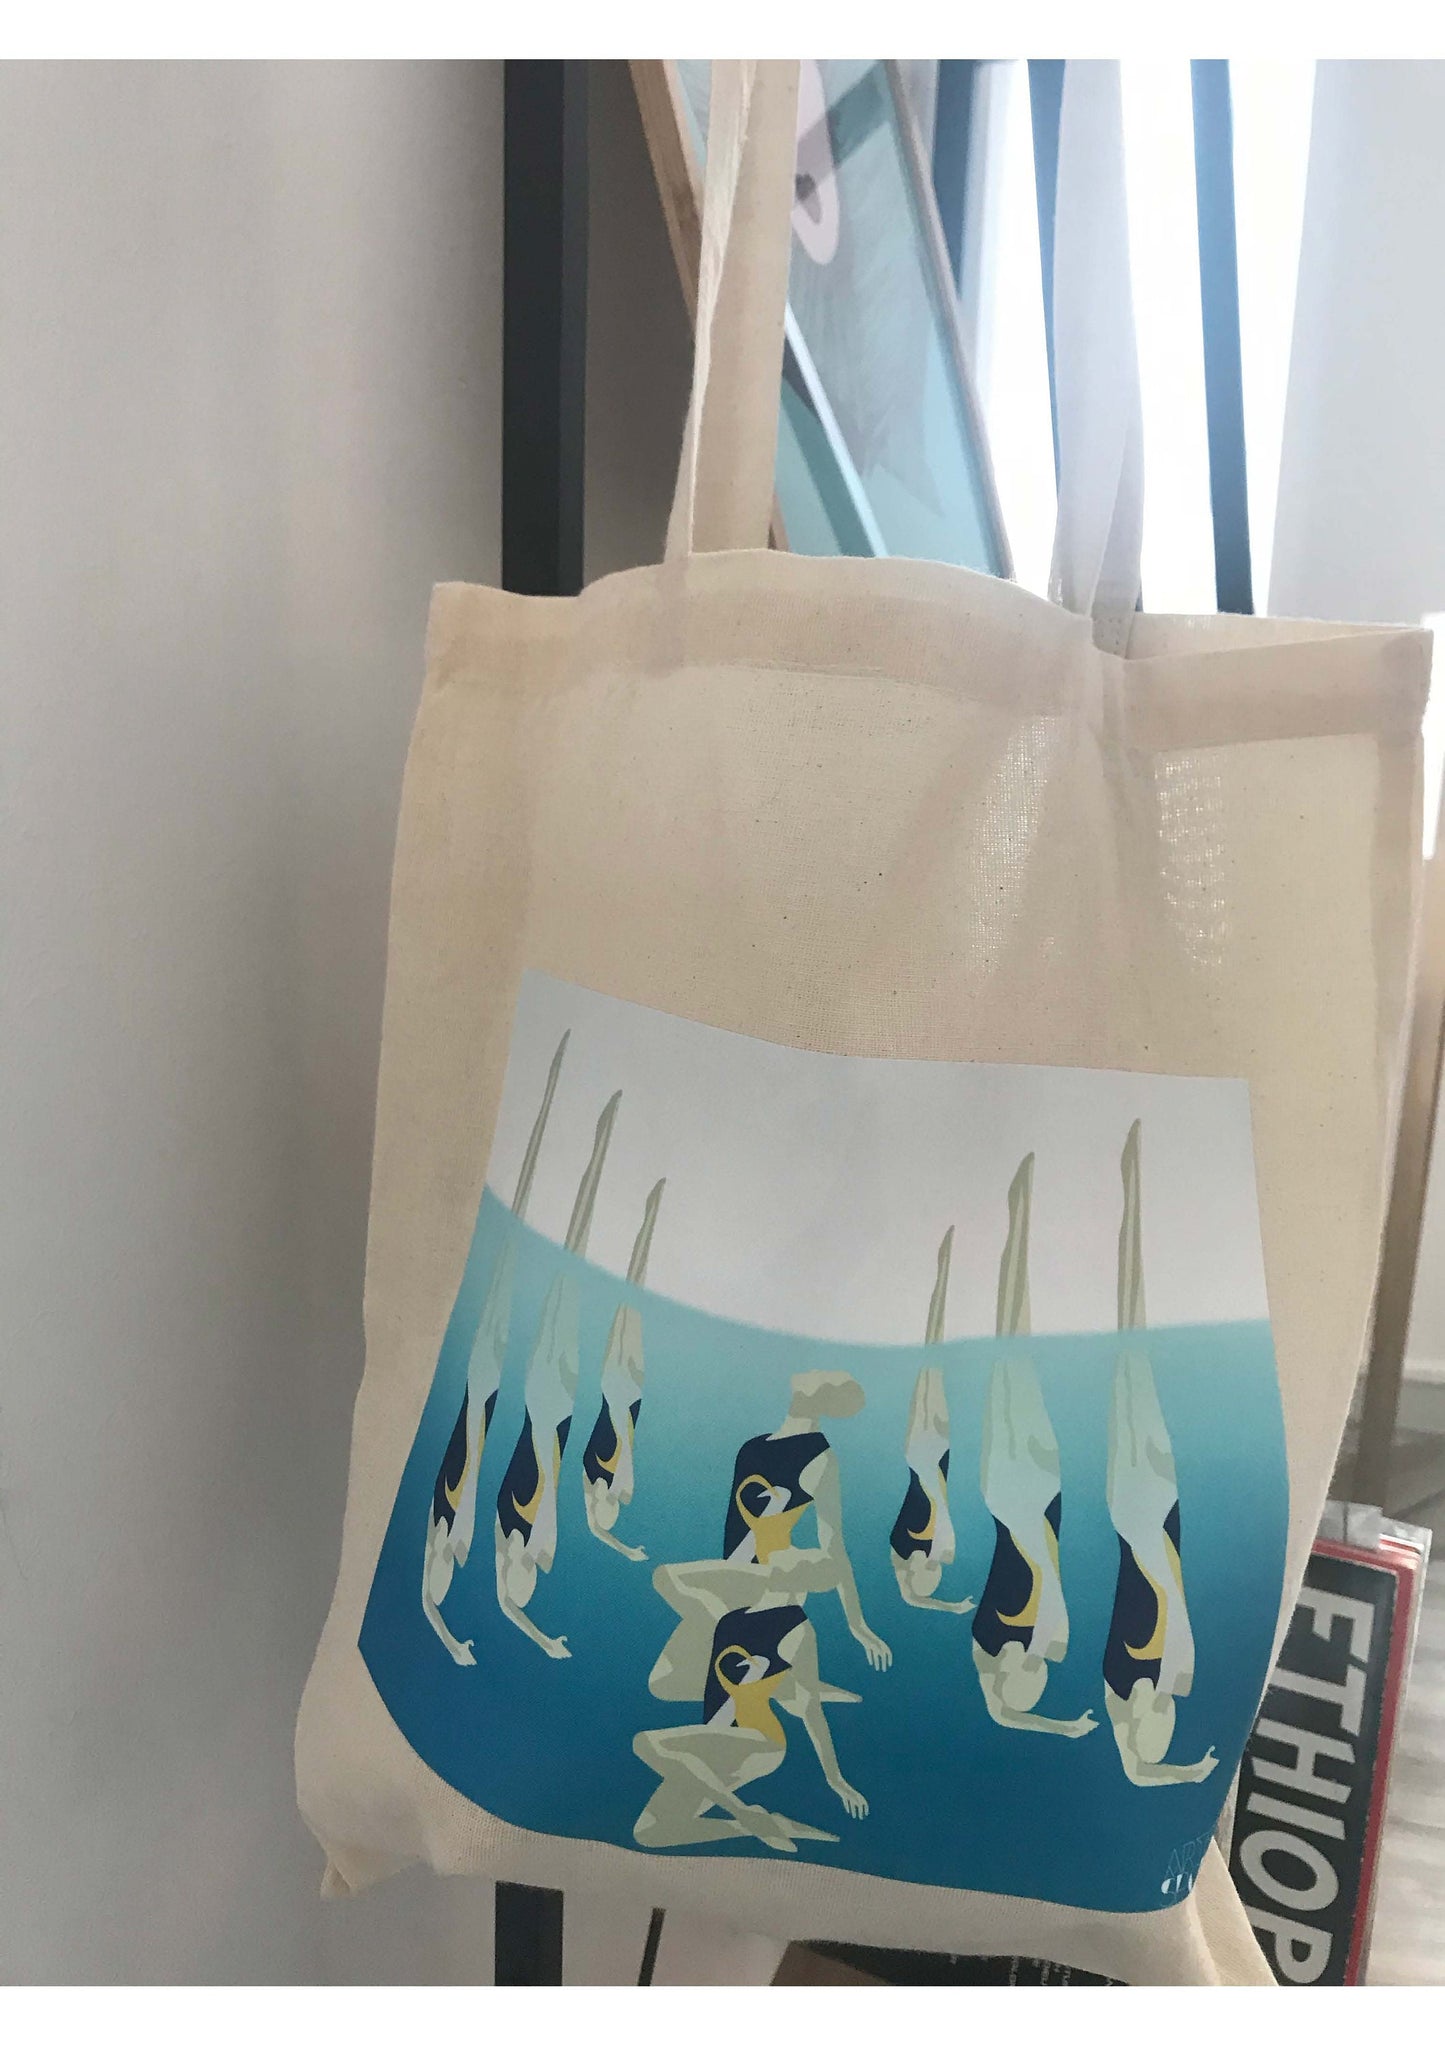 Tote bag ou sac natation synchronisée "La danse de l'eau"